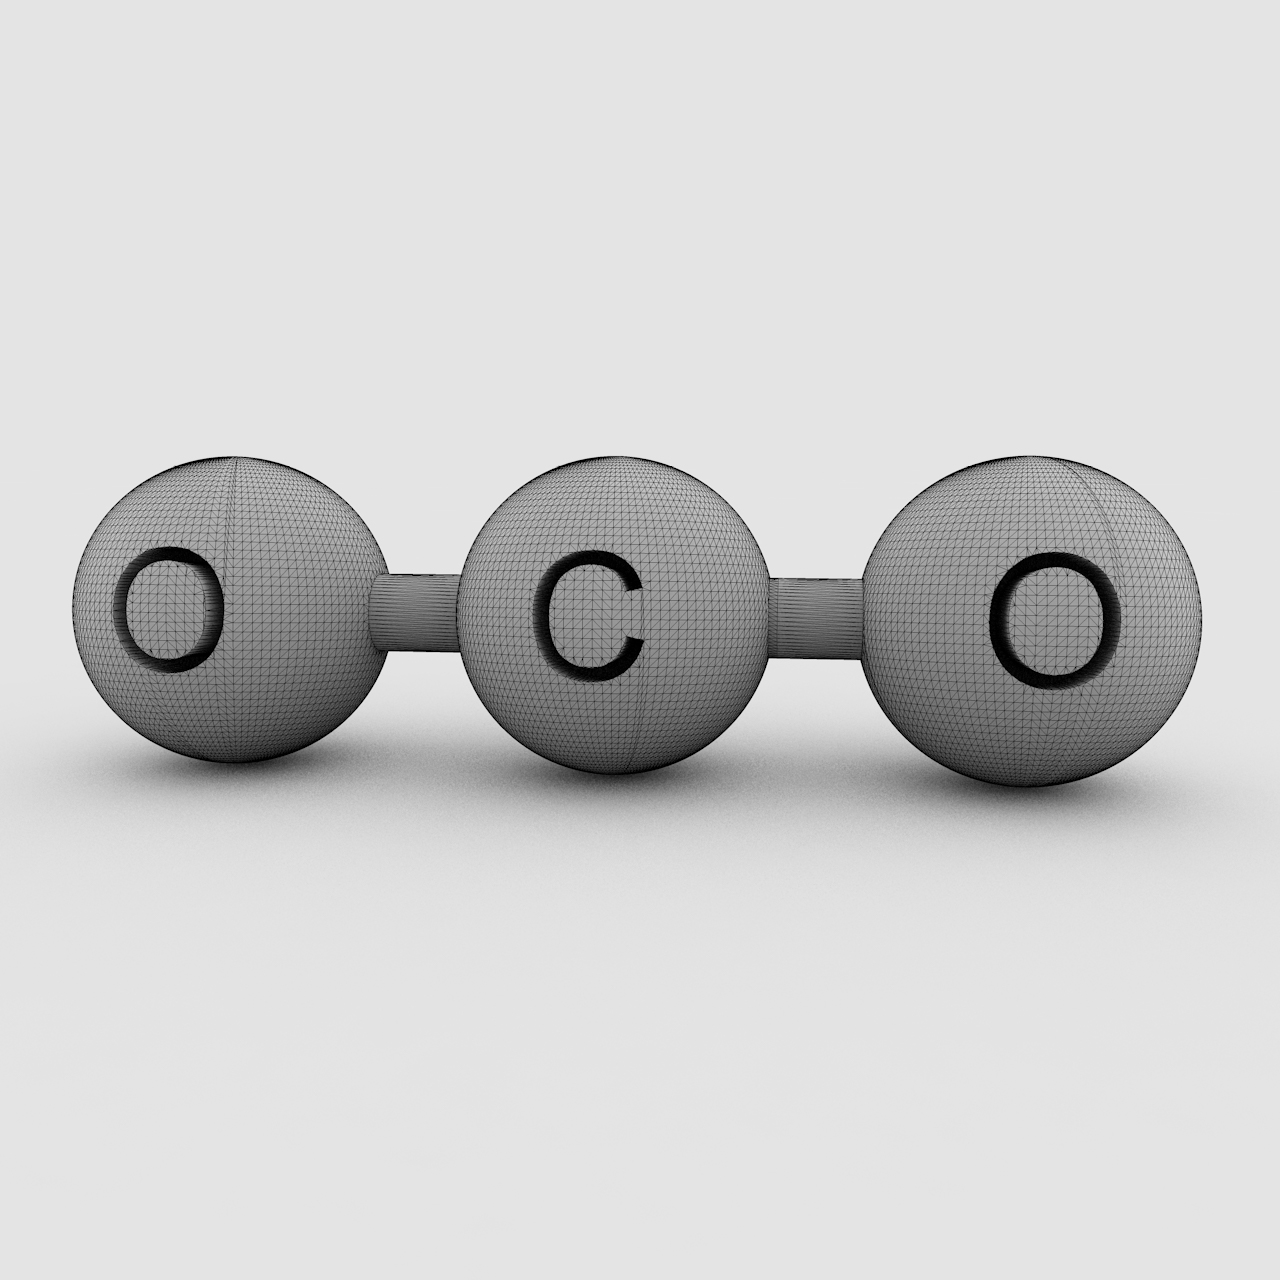 3D-Druckmodell der CO2-Molekülstruktur